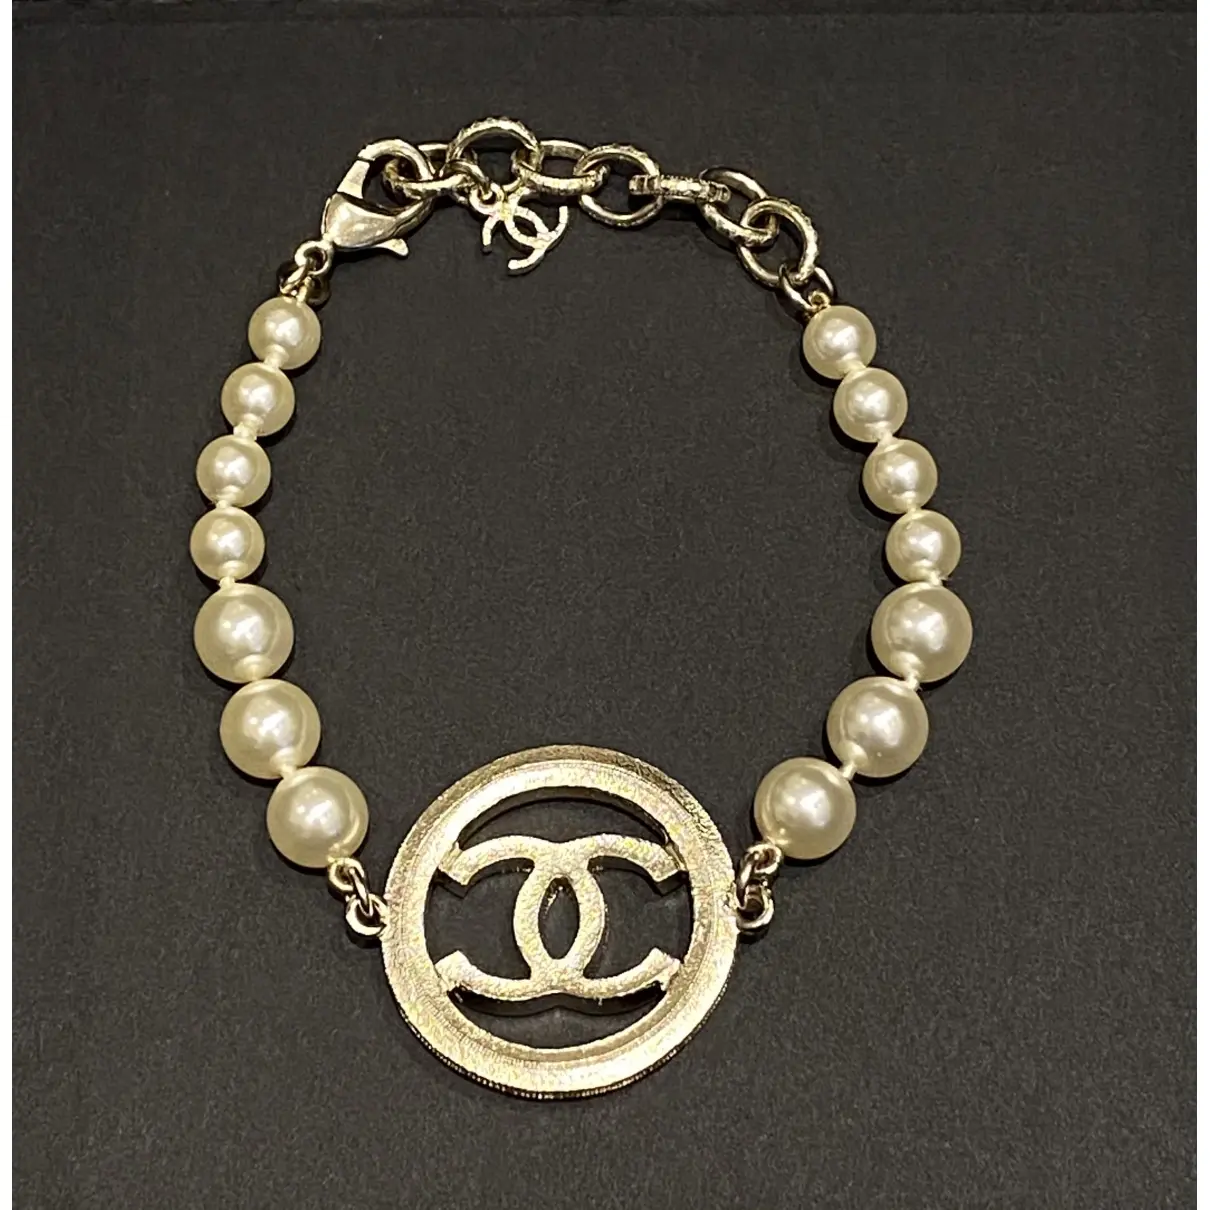 Buy Chanel Silver Metal Bracelet online